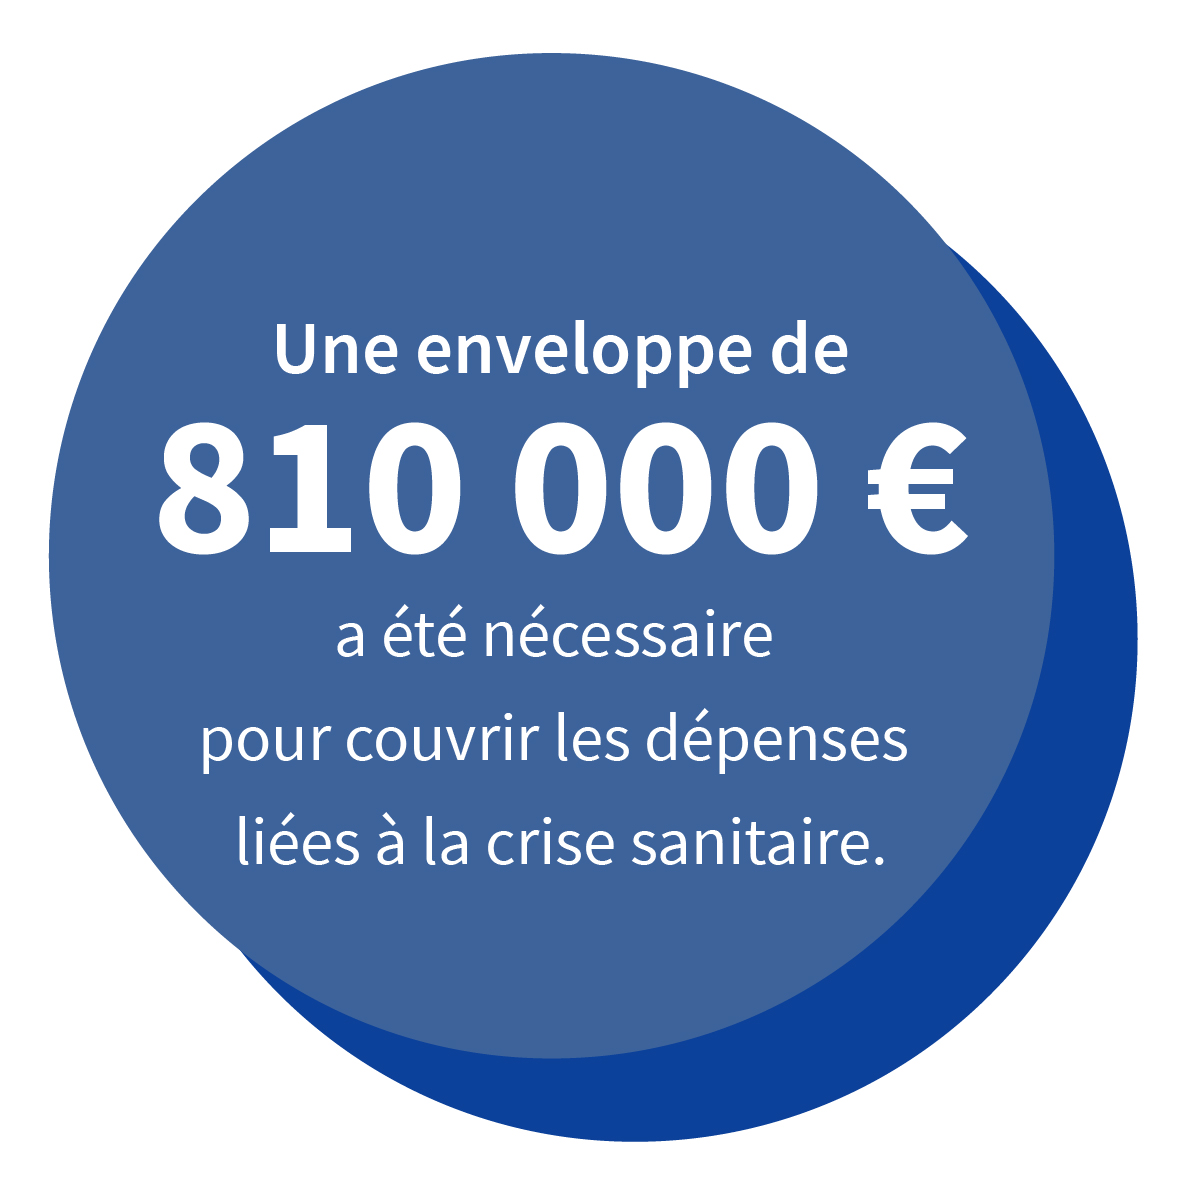 Une enveloppe de 810 000 € a été nécessaire  pour couvrir les dépenses liées à la crise sanitaire.